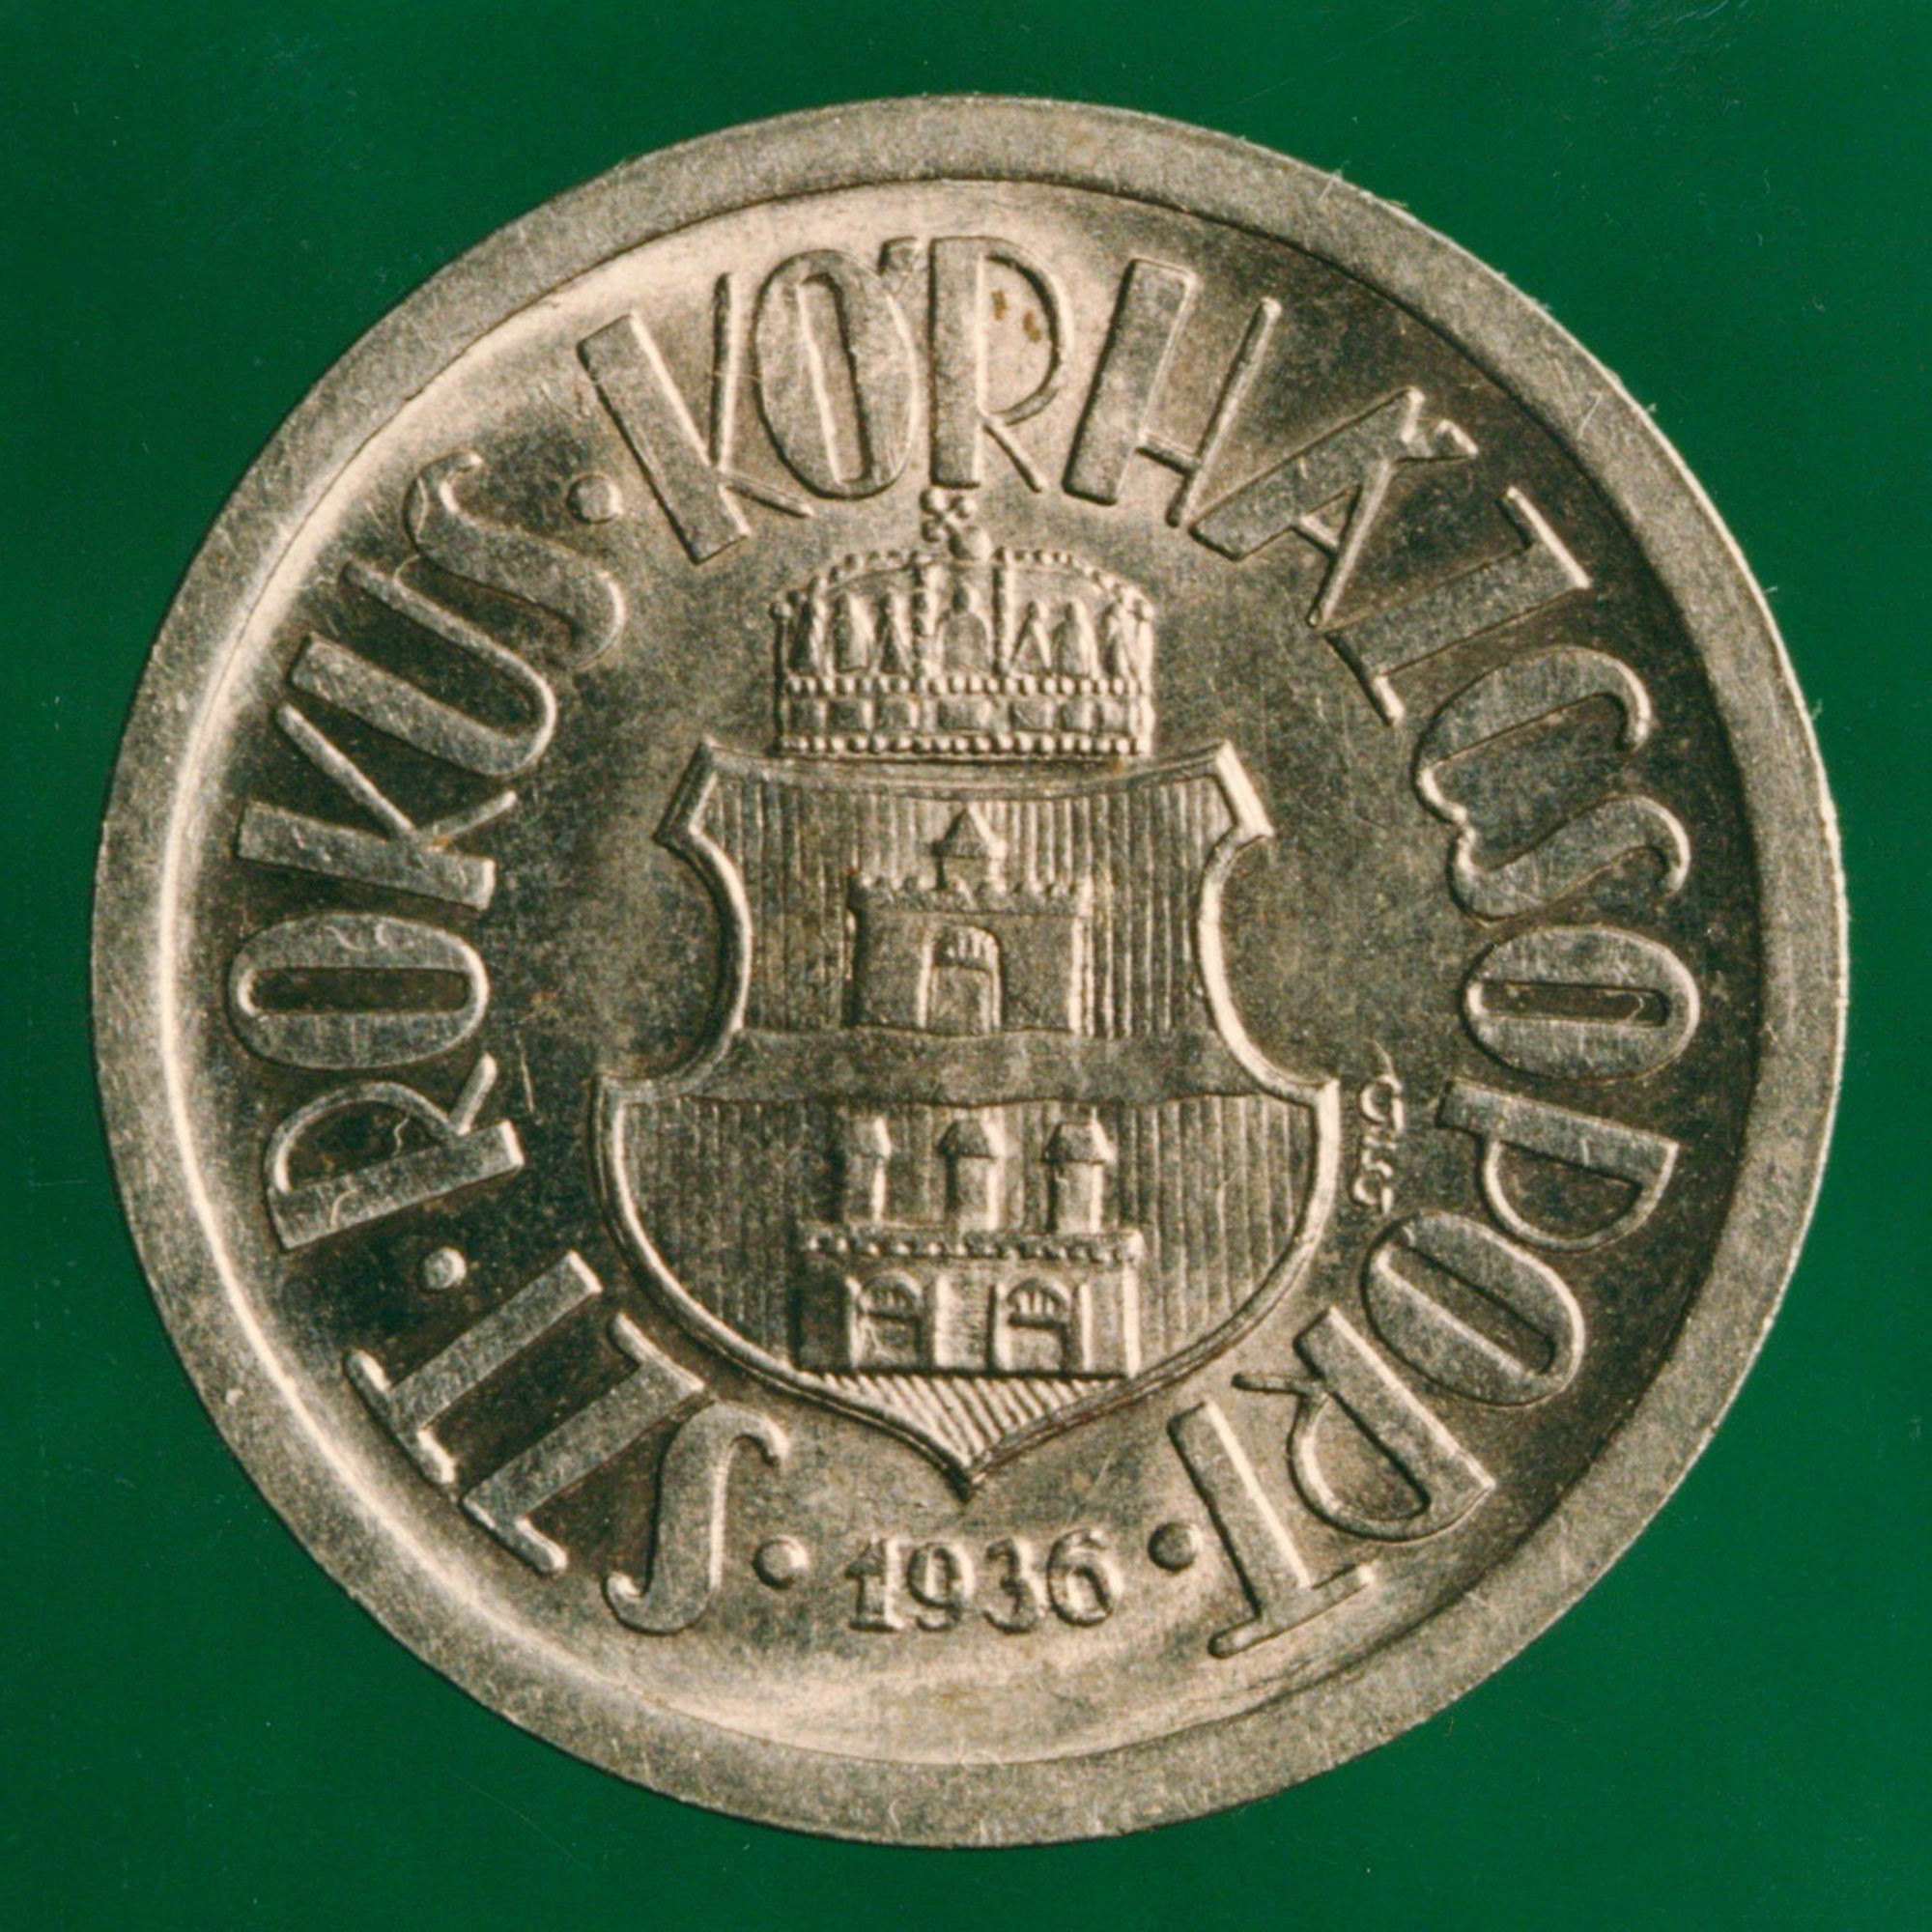 Távbeszélő érme „SZENT RÓKUS KÓRHÁZ 1936” (Postamúzeum CC BY-NC-SA)